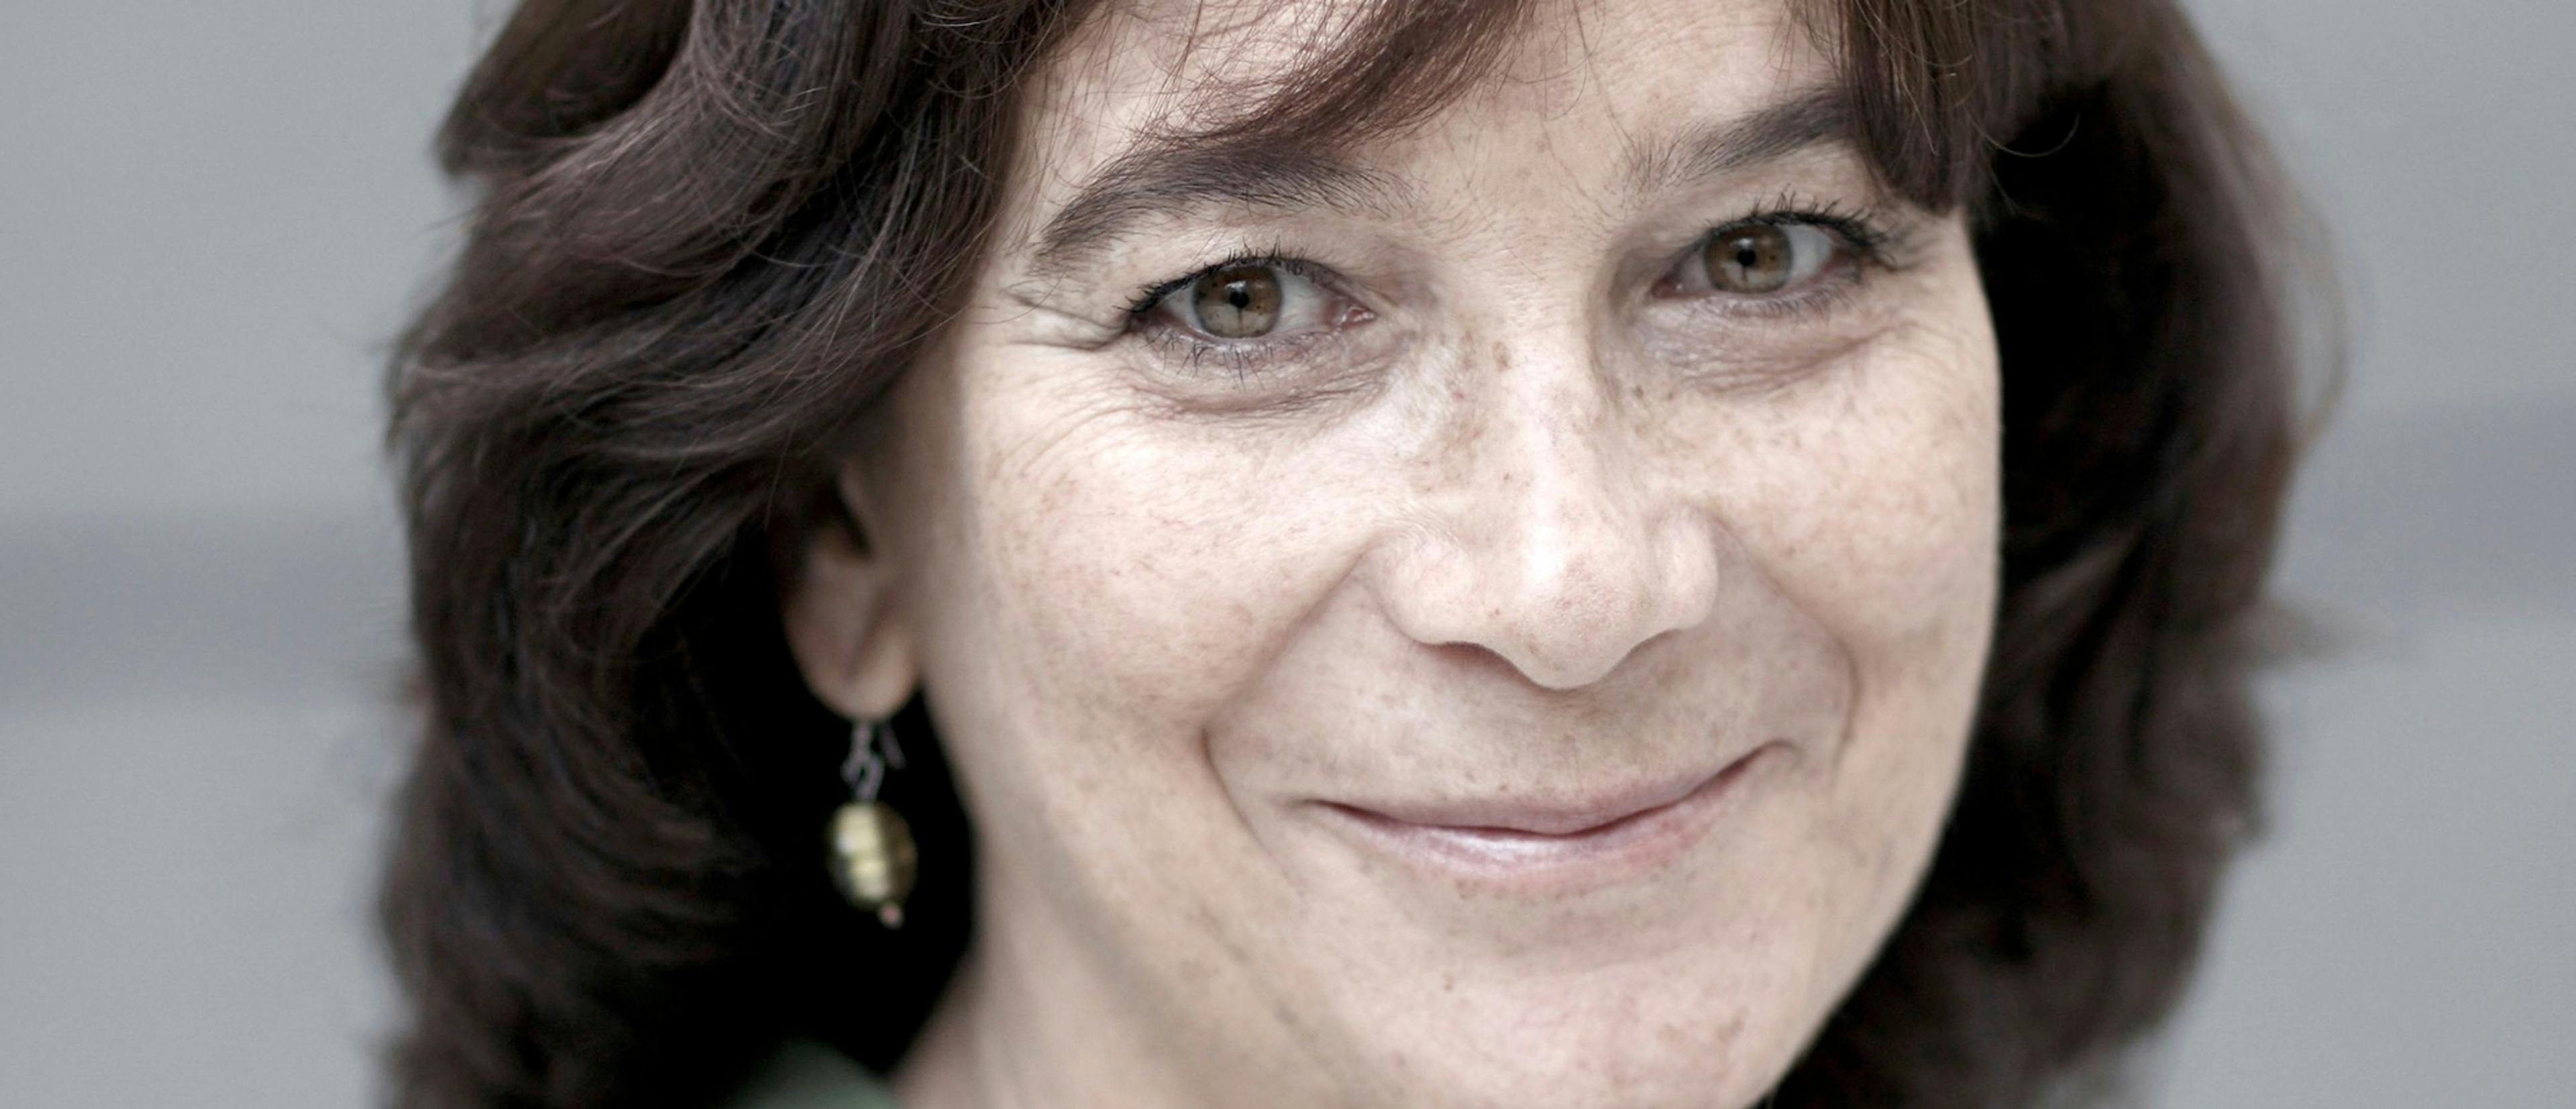 La directora y guionista Patricia Ferreira ha fallecido en Madrid, a los 65 años